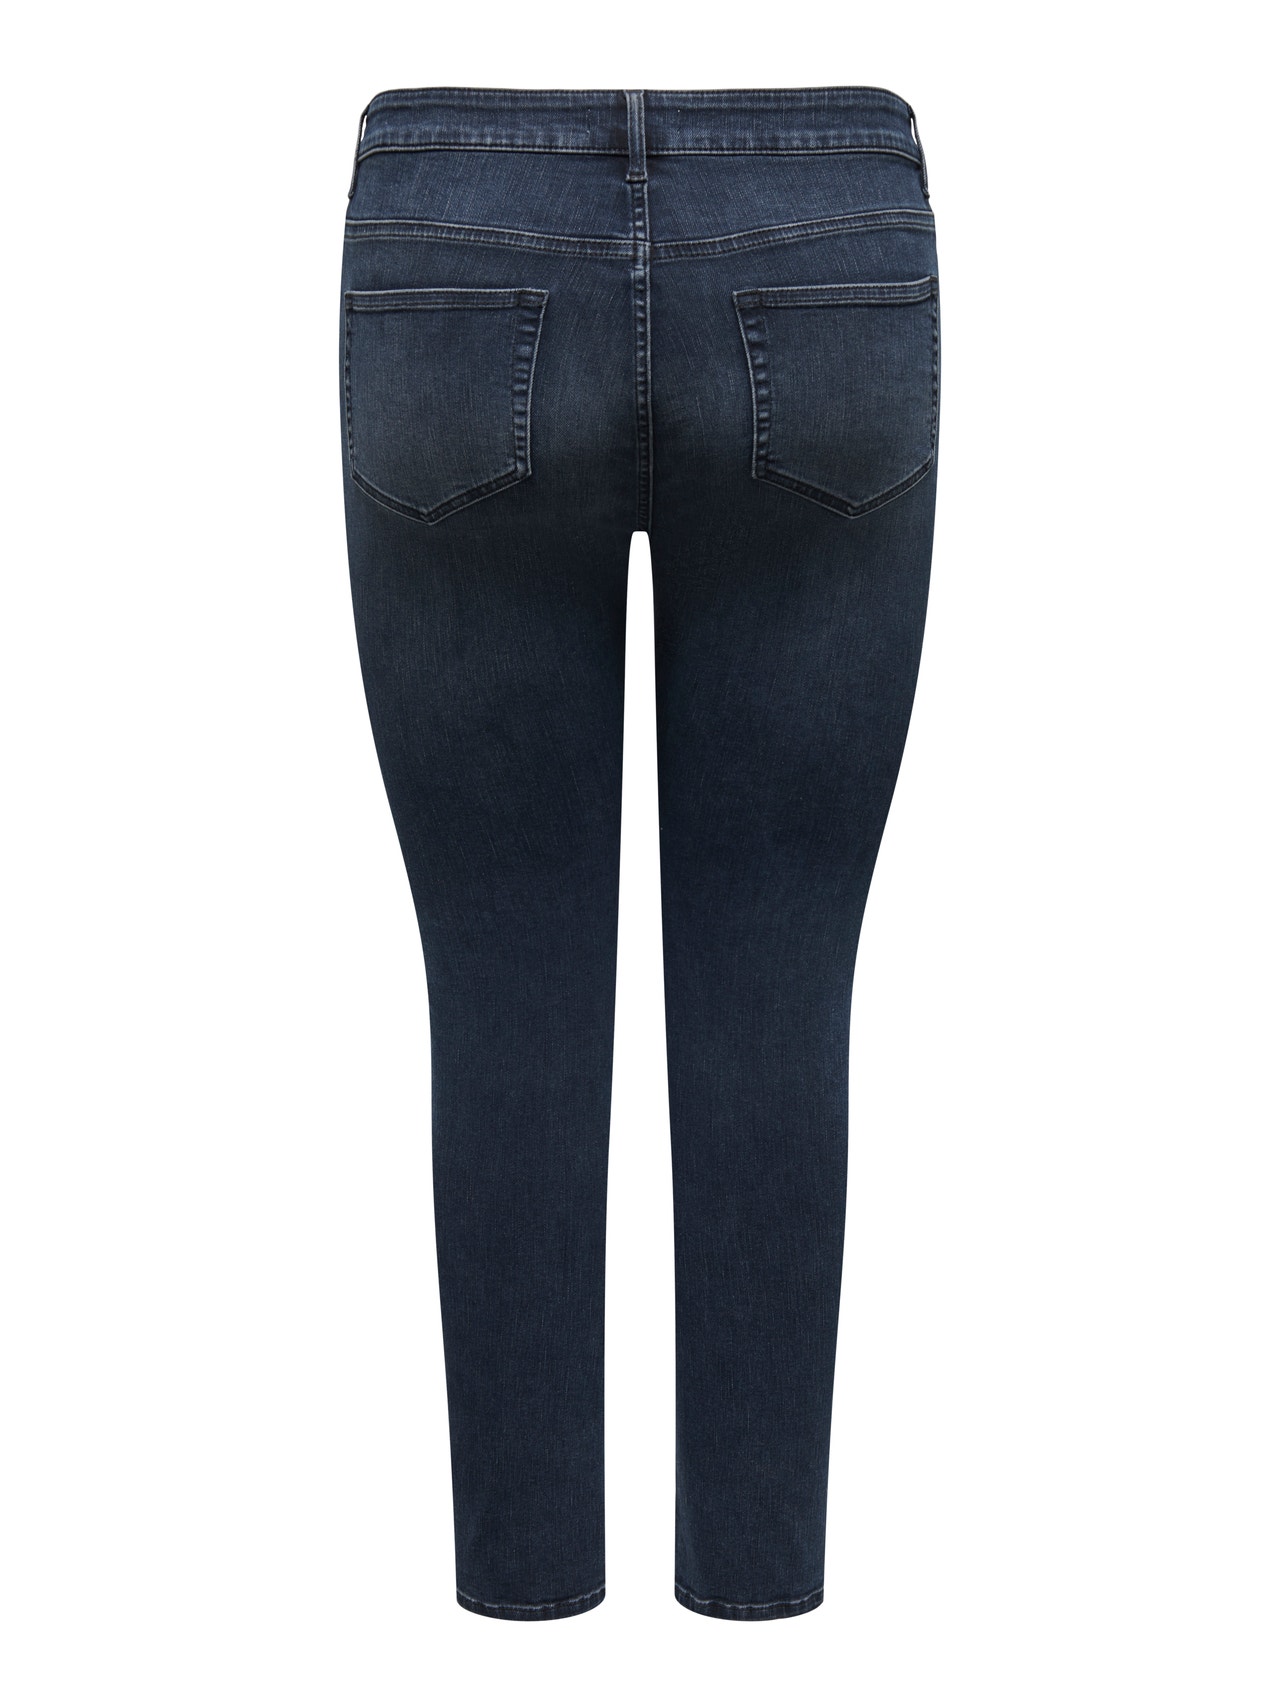 ONLY Skinny fit Regular waist Jeans -Blue Black Denim - 15266401